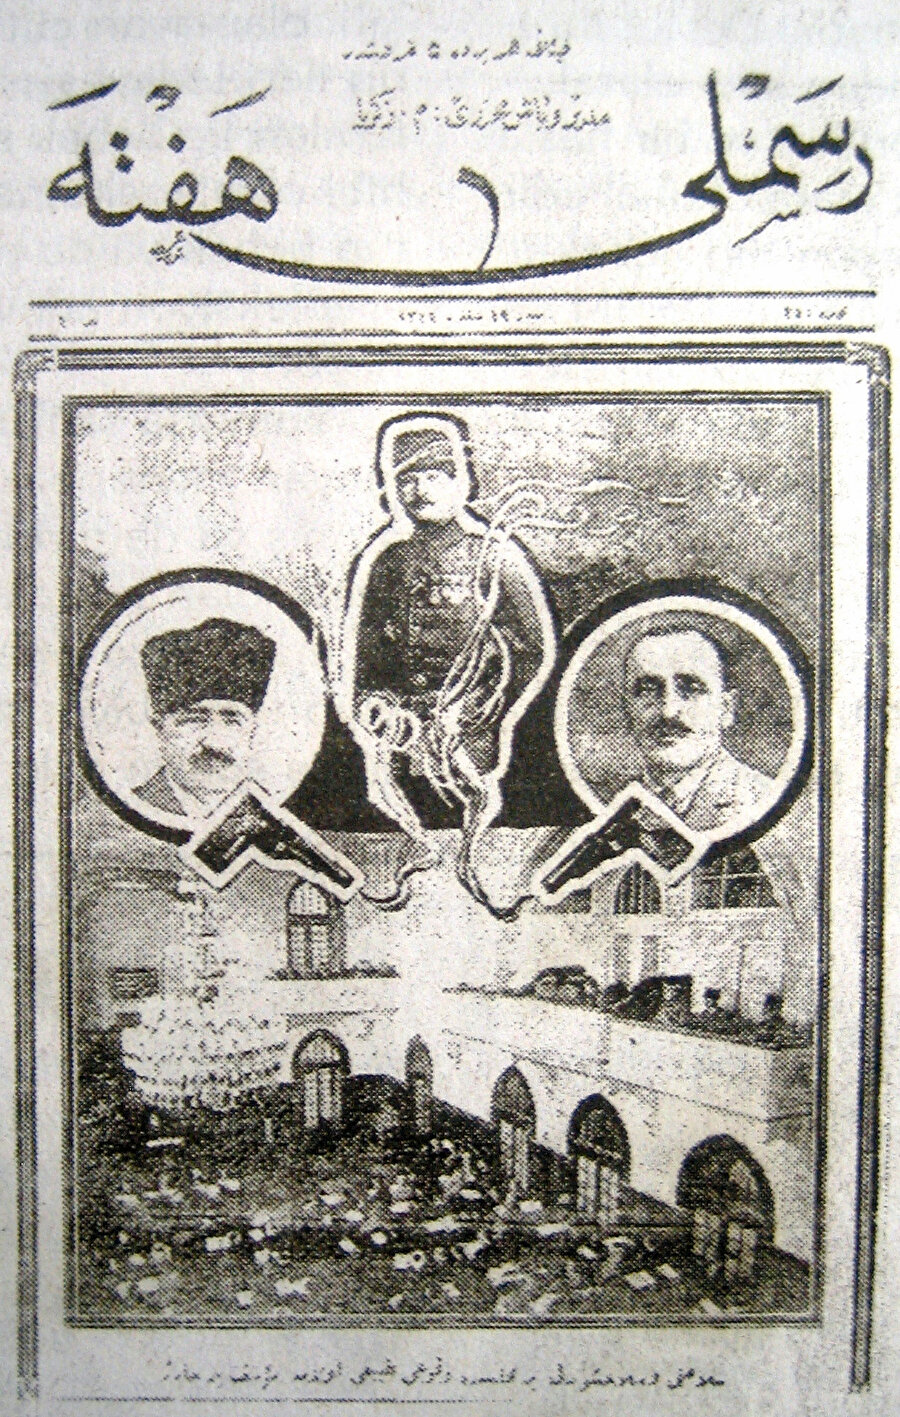 » Cinayet kapağa böyle taşındı. 19 Şubat 1925 tarihli Resimli Hafta gazetesi, Halid Paşa’nın öldürülmesi haberini bu çarpıcı kapakla sunmuştu.